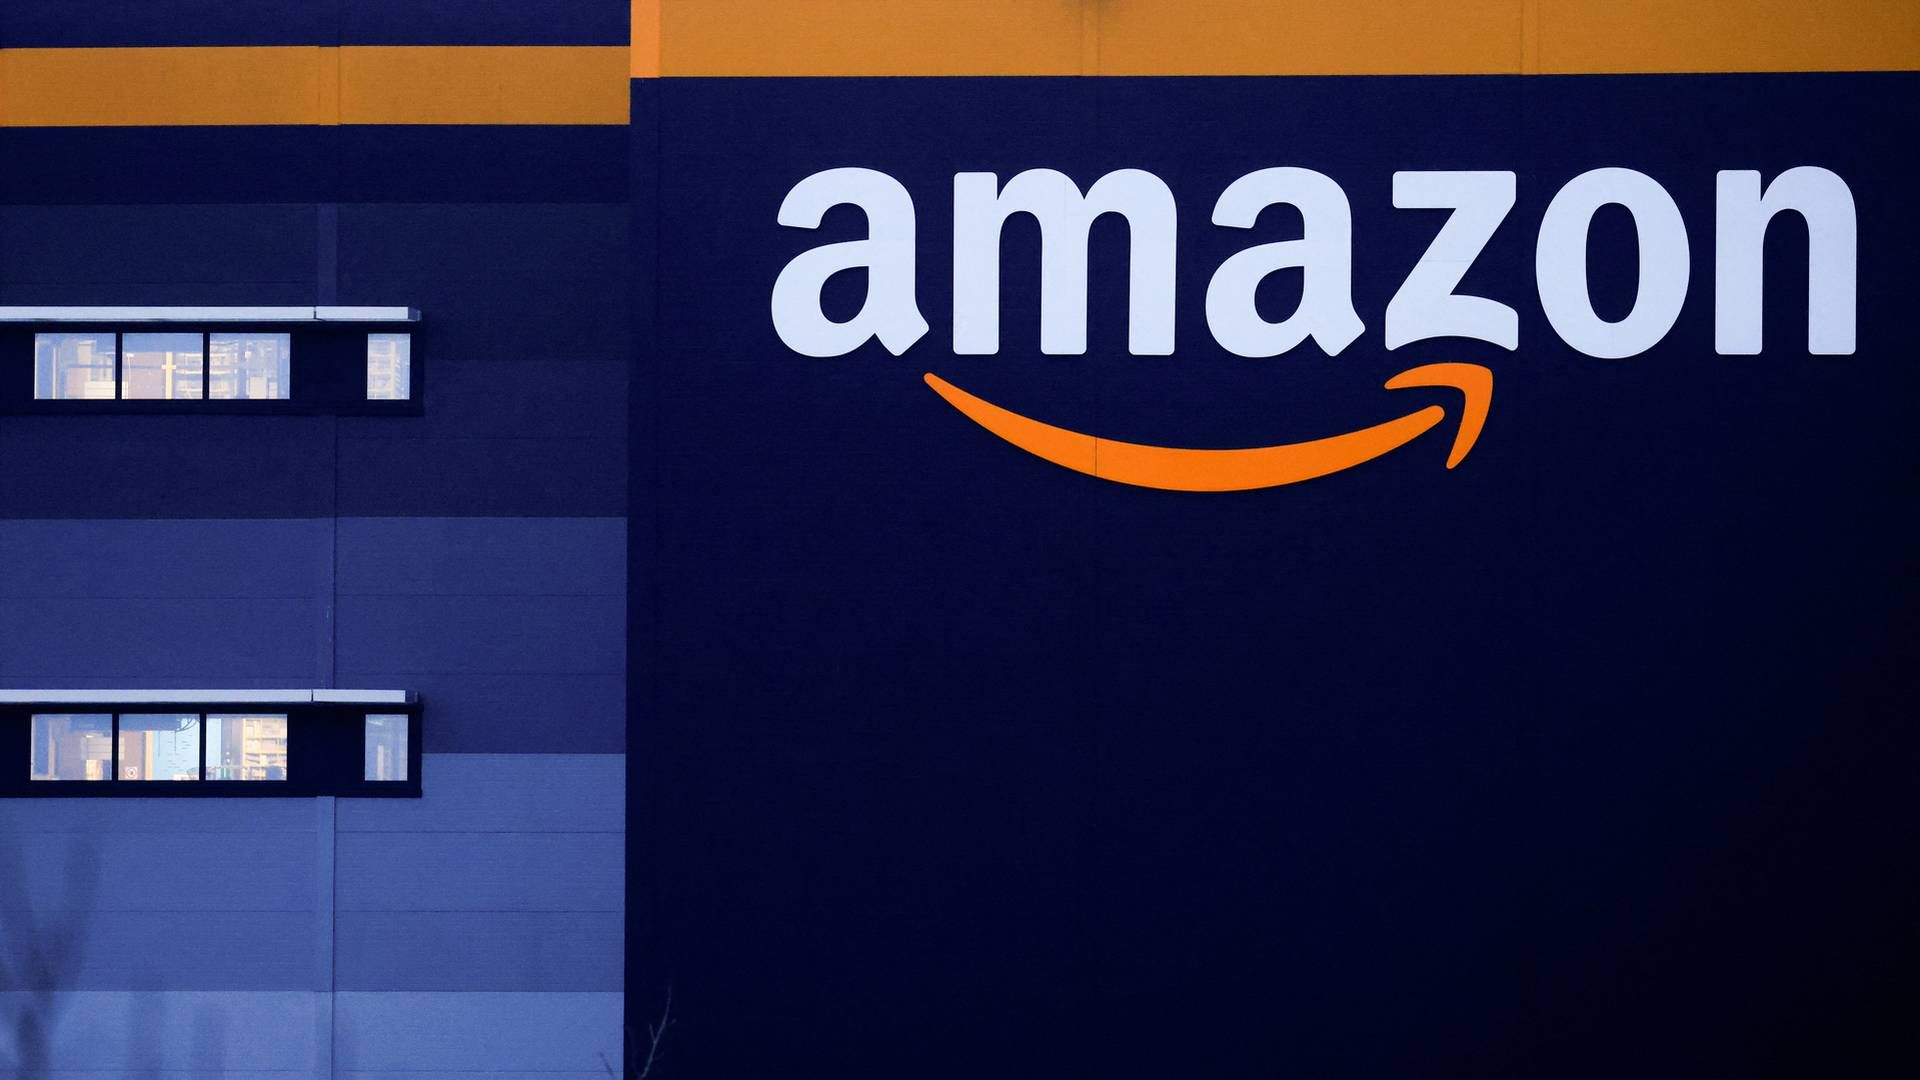 Amazon havde i seneste regnskabsår en omsætningsvækst på 21,7 pct. og haler ind på Walmart som verdens største. | Foto: GONZALO FUENTES/REUTERS / X07238